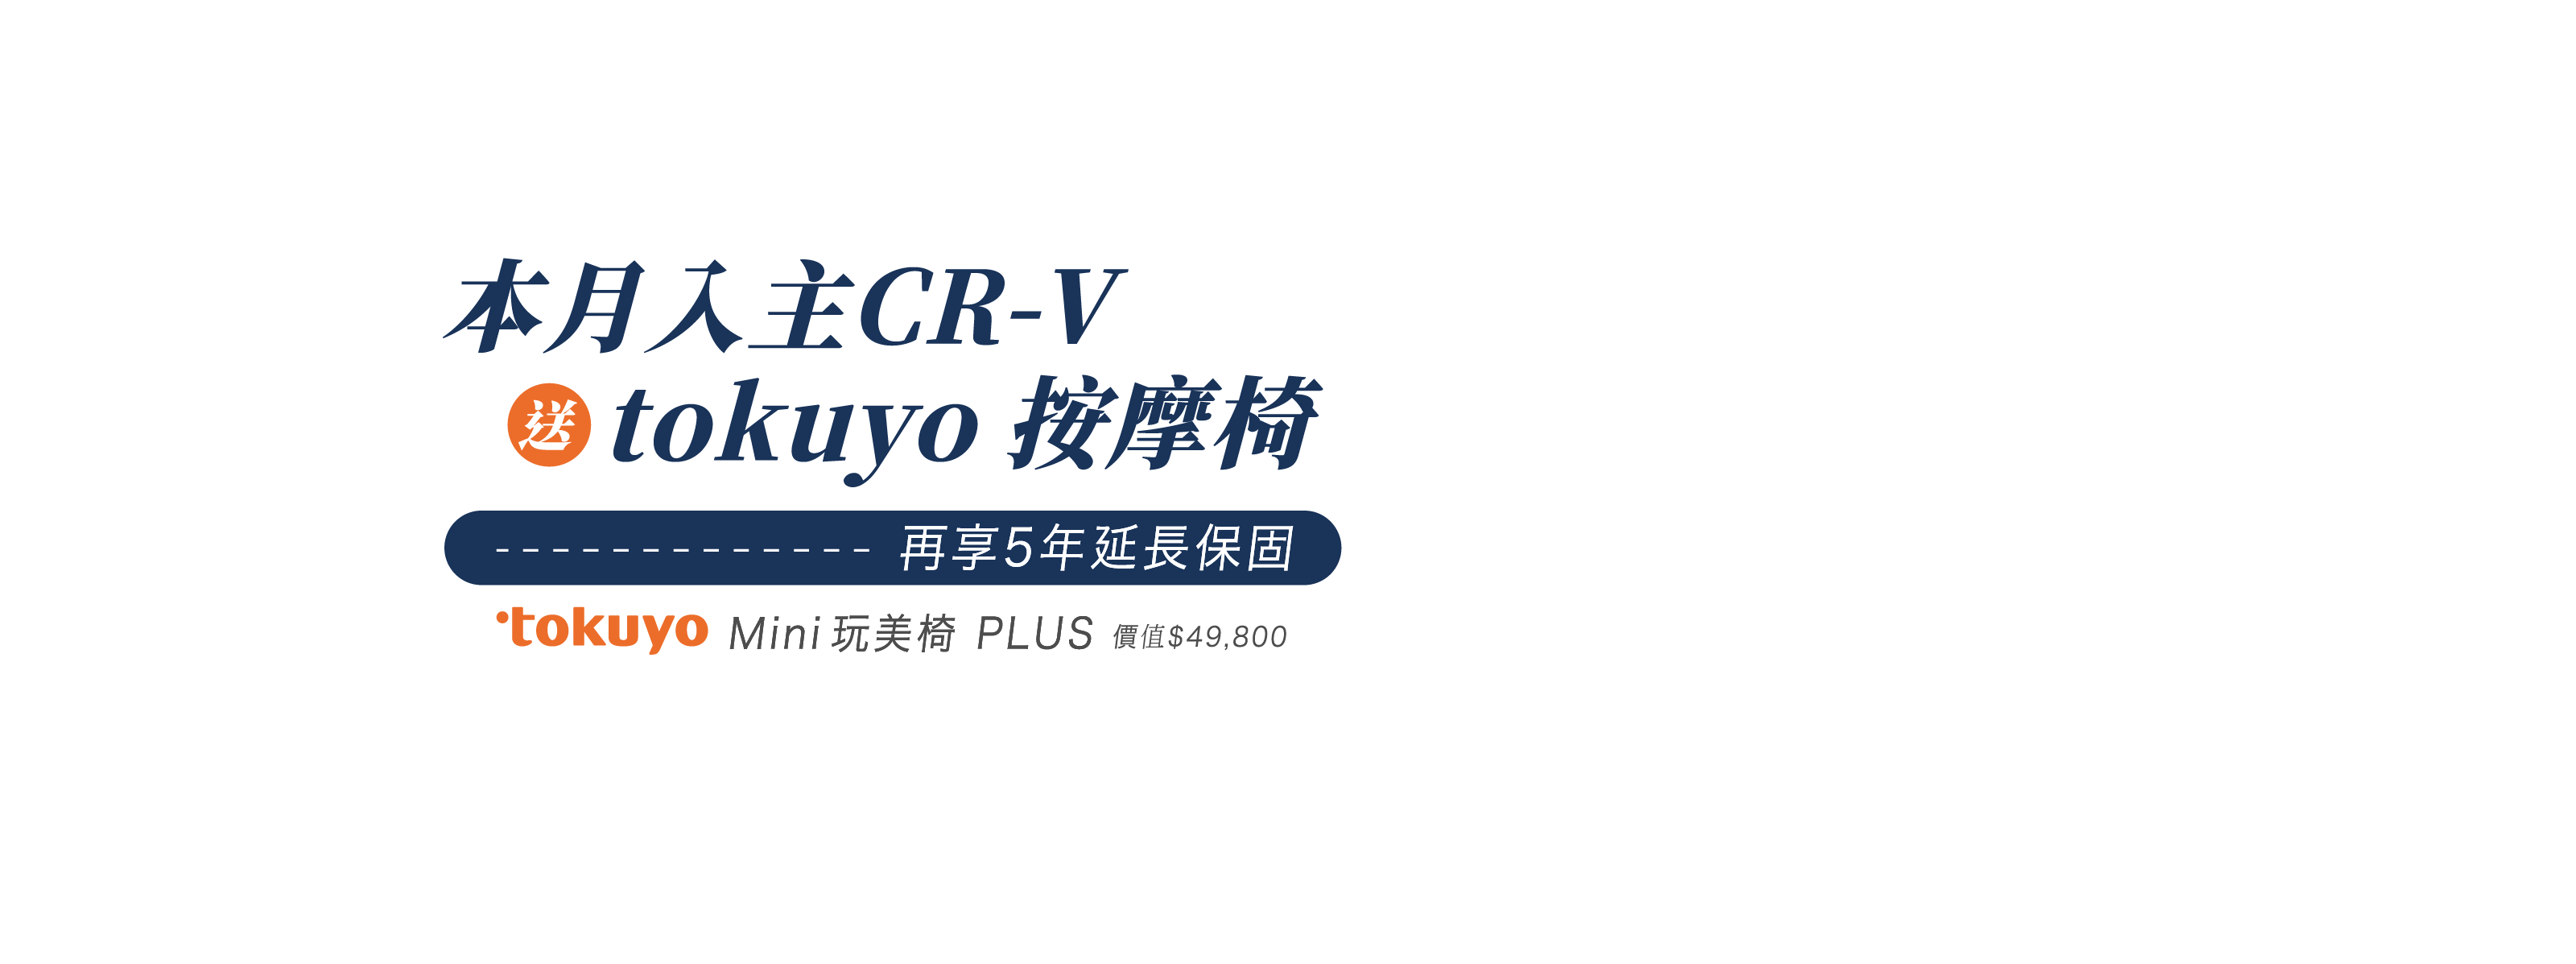 本月入主 CR-V，送tokuyo按摩椅，再享5年延長保固。